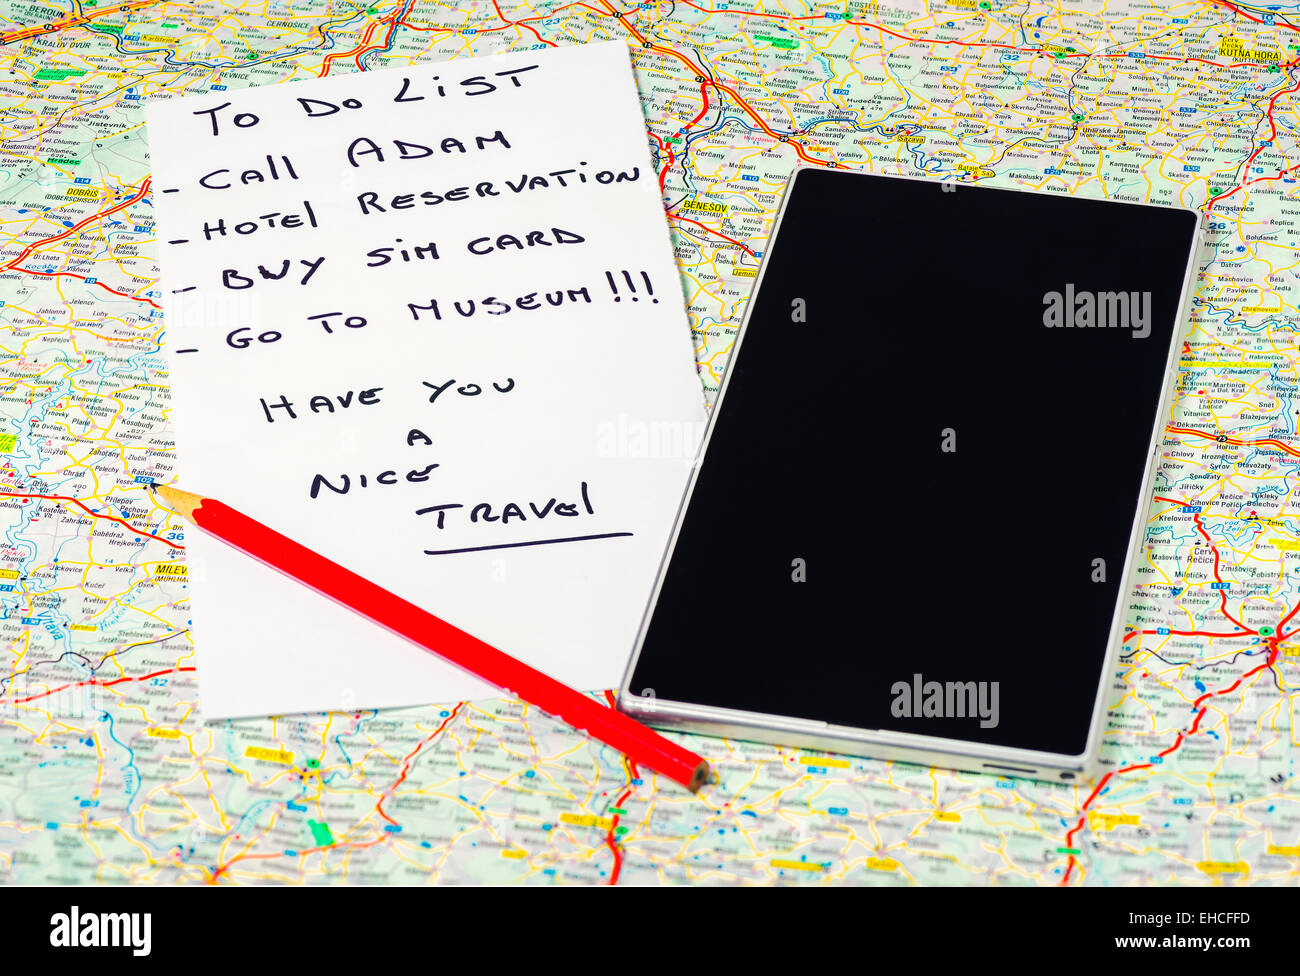 In das Bild einer Karte, ein Bleistift, ein Telefon / Tablet und eine Liste von Dingen zu tun. Stockfoto